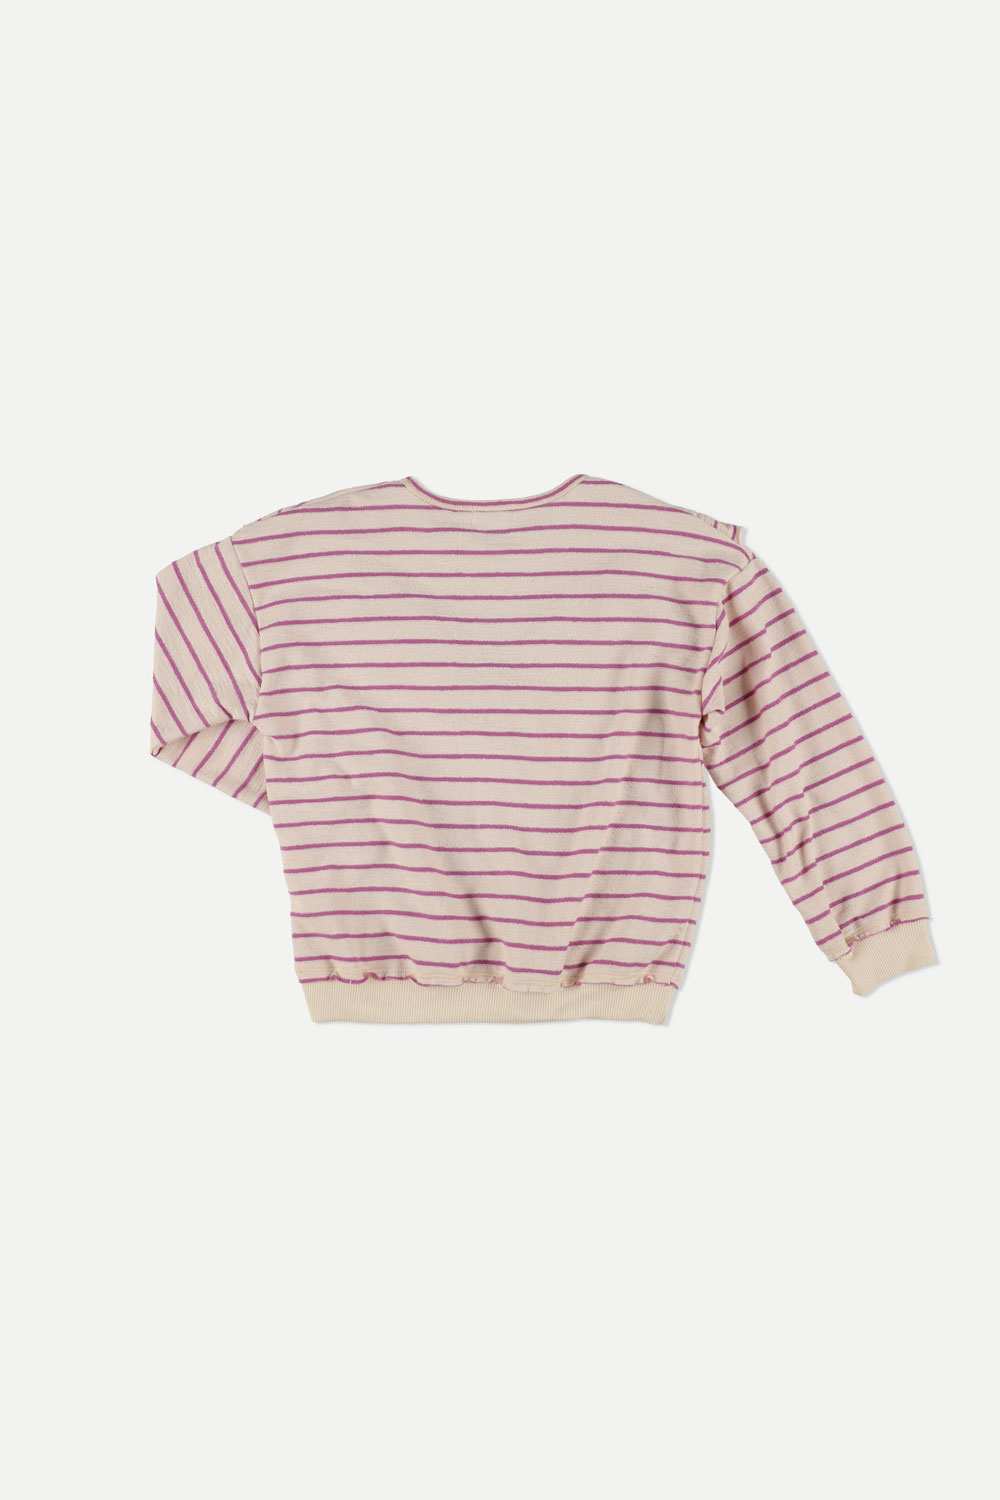 My Little Cozmo Organic Ruffle Sweatshirt | Crepe Stripe